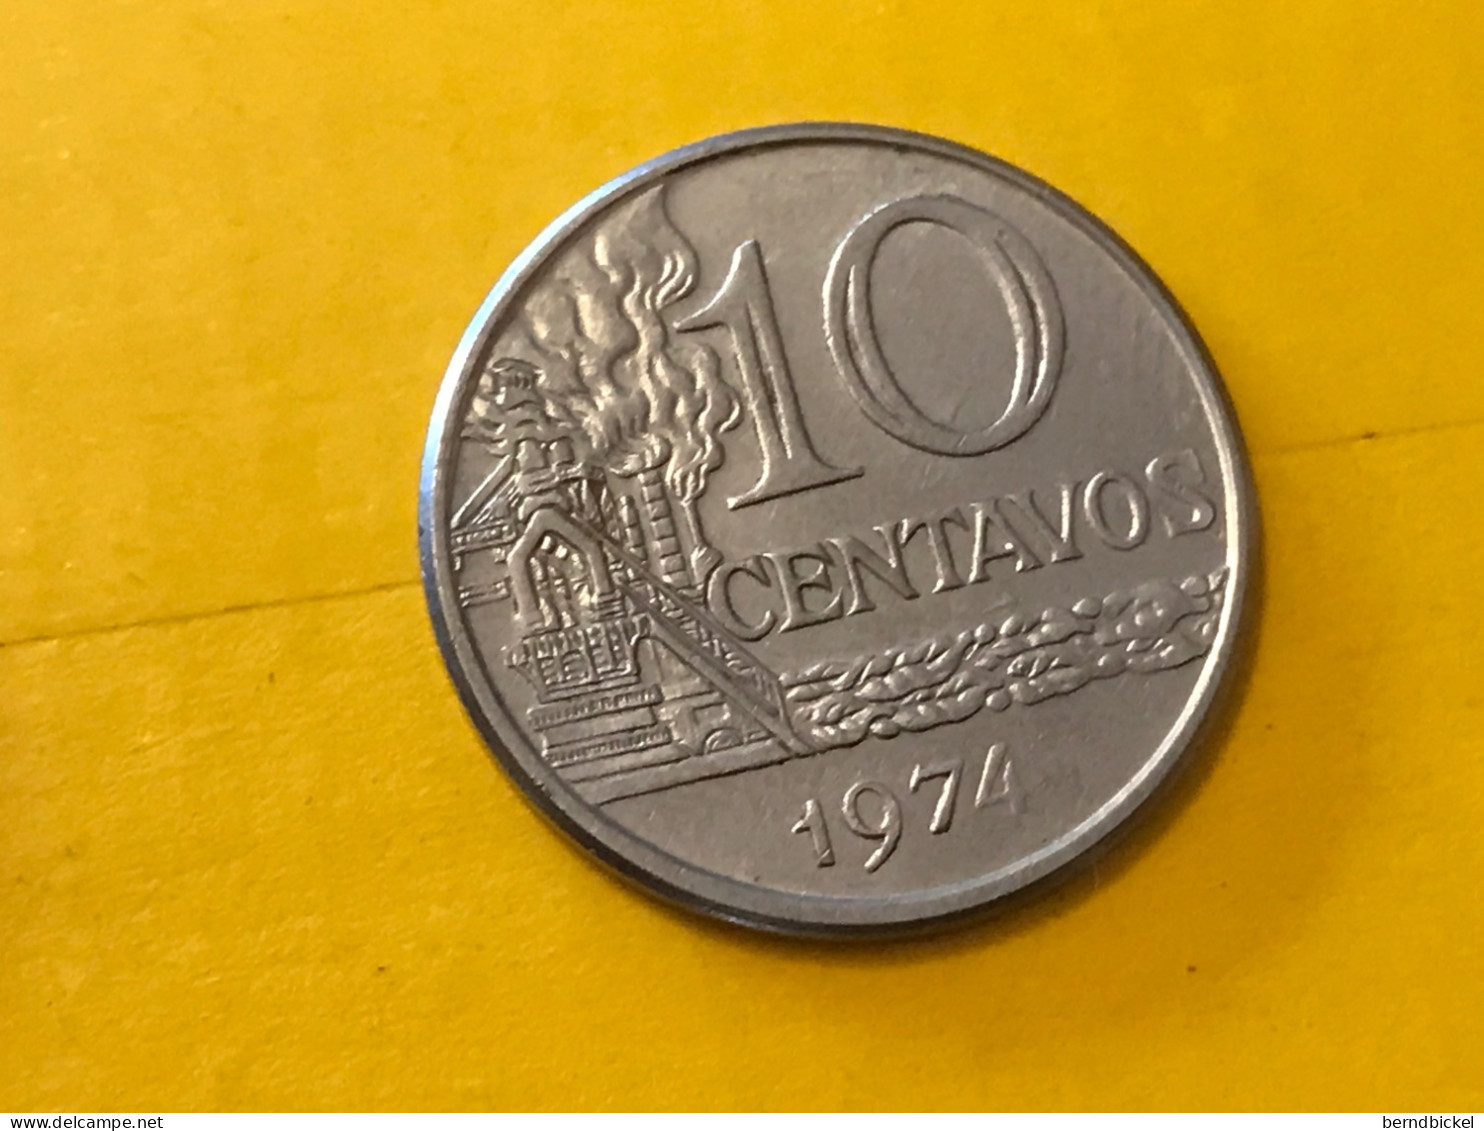 Münze Münzen Umlaufmünze Brasilien 10 Centavos 1974 - Brésil